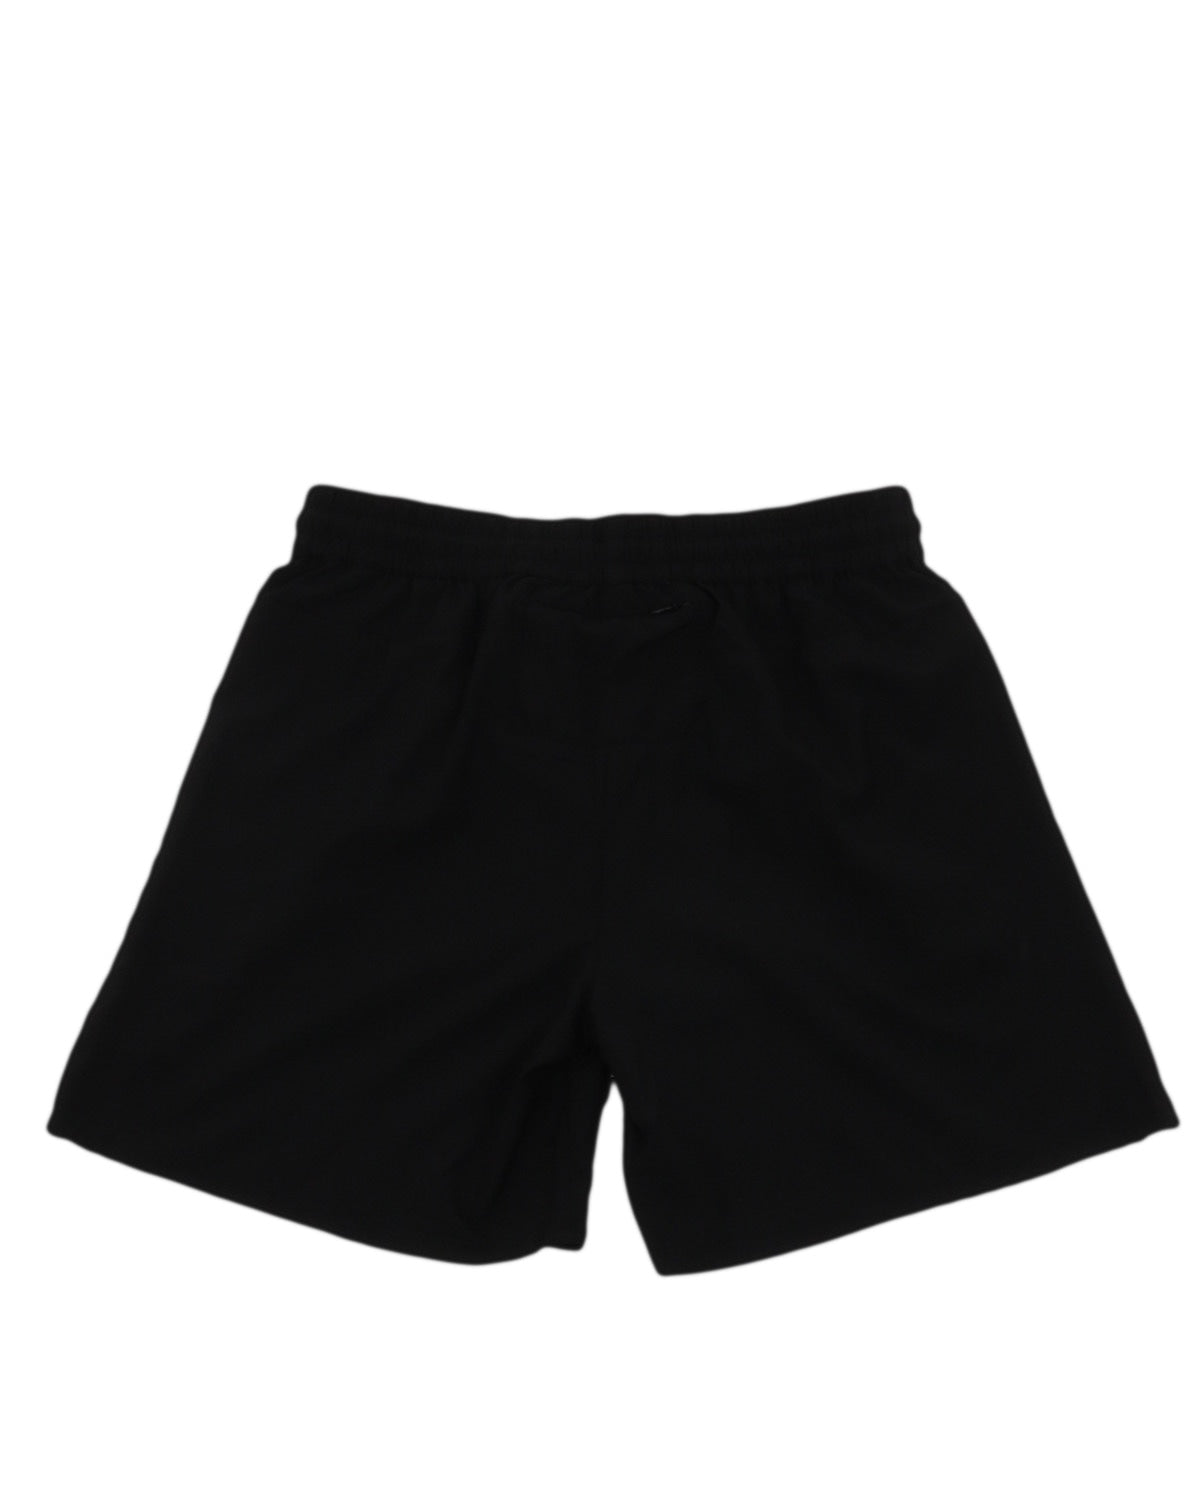 olaf_olaf track shorts_black_2_2